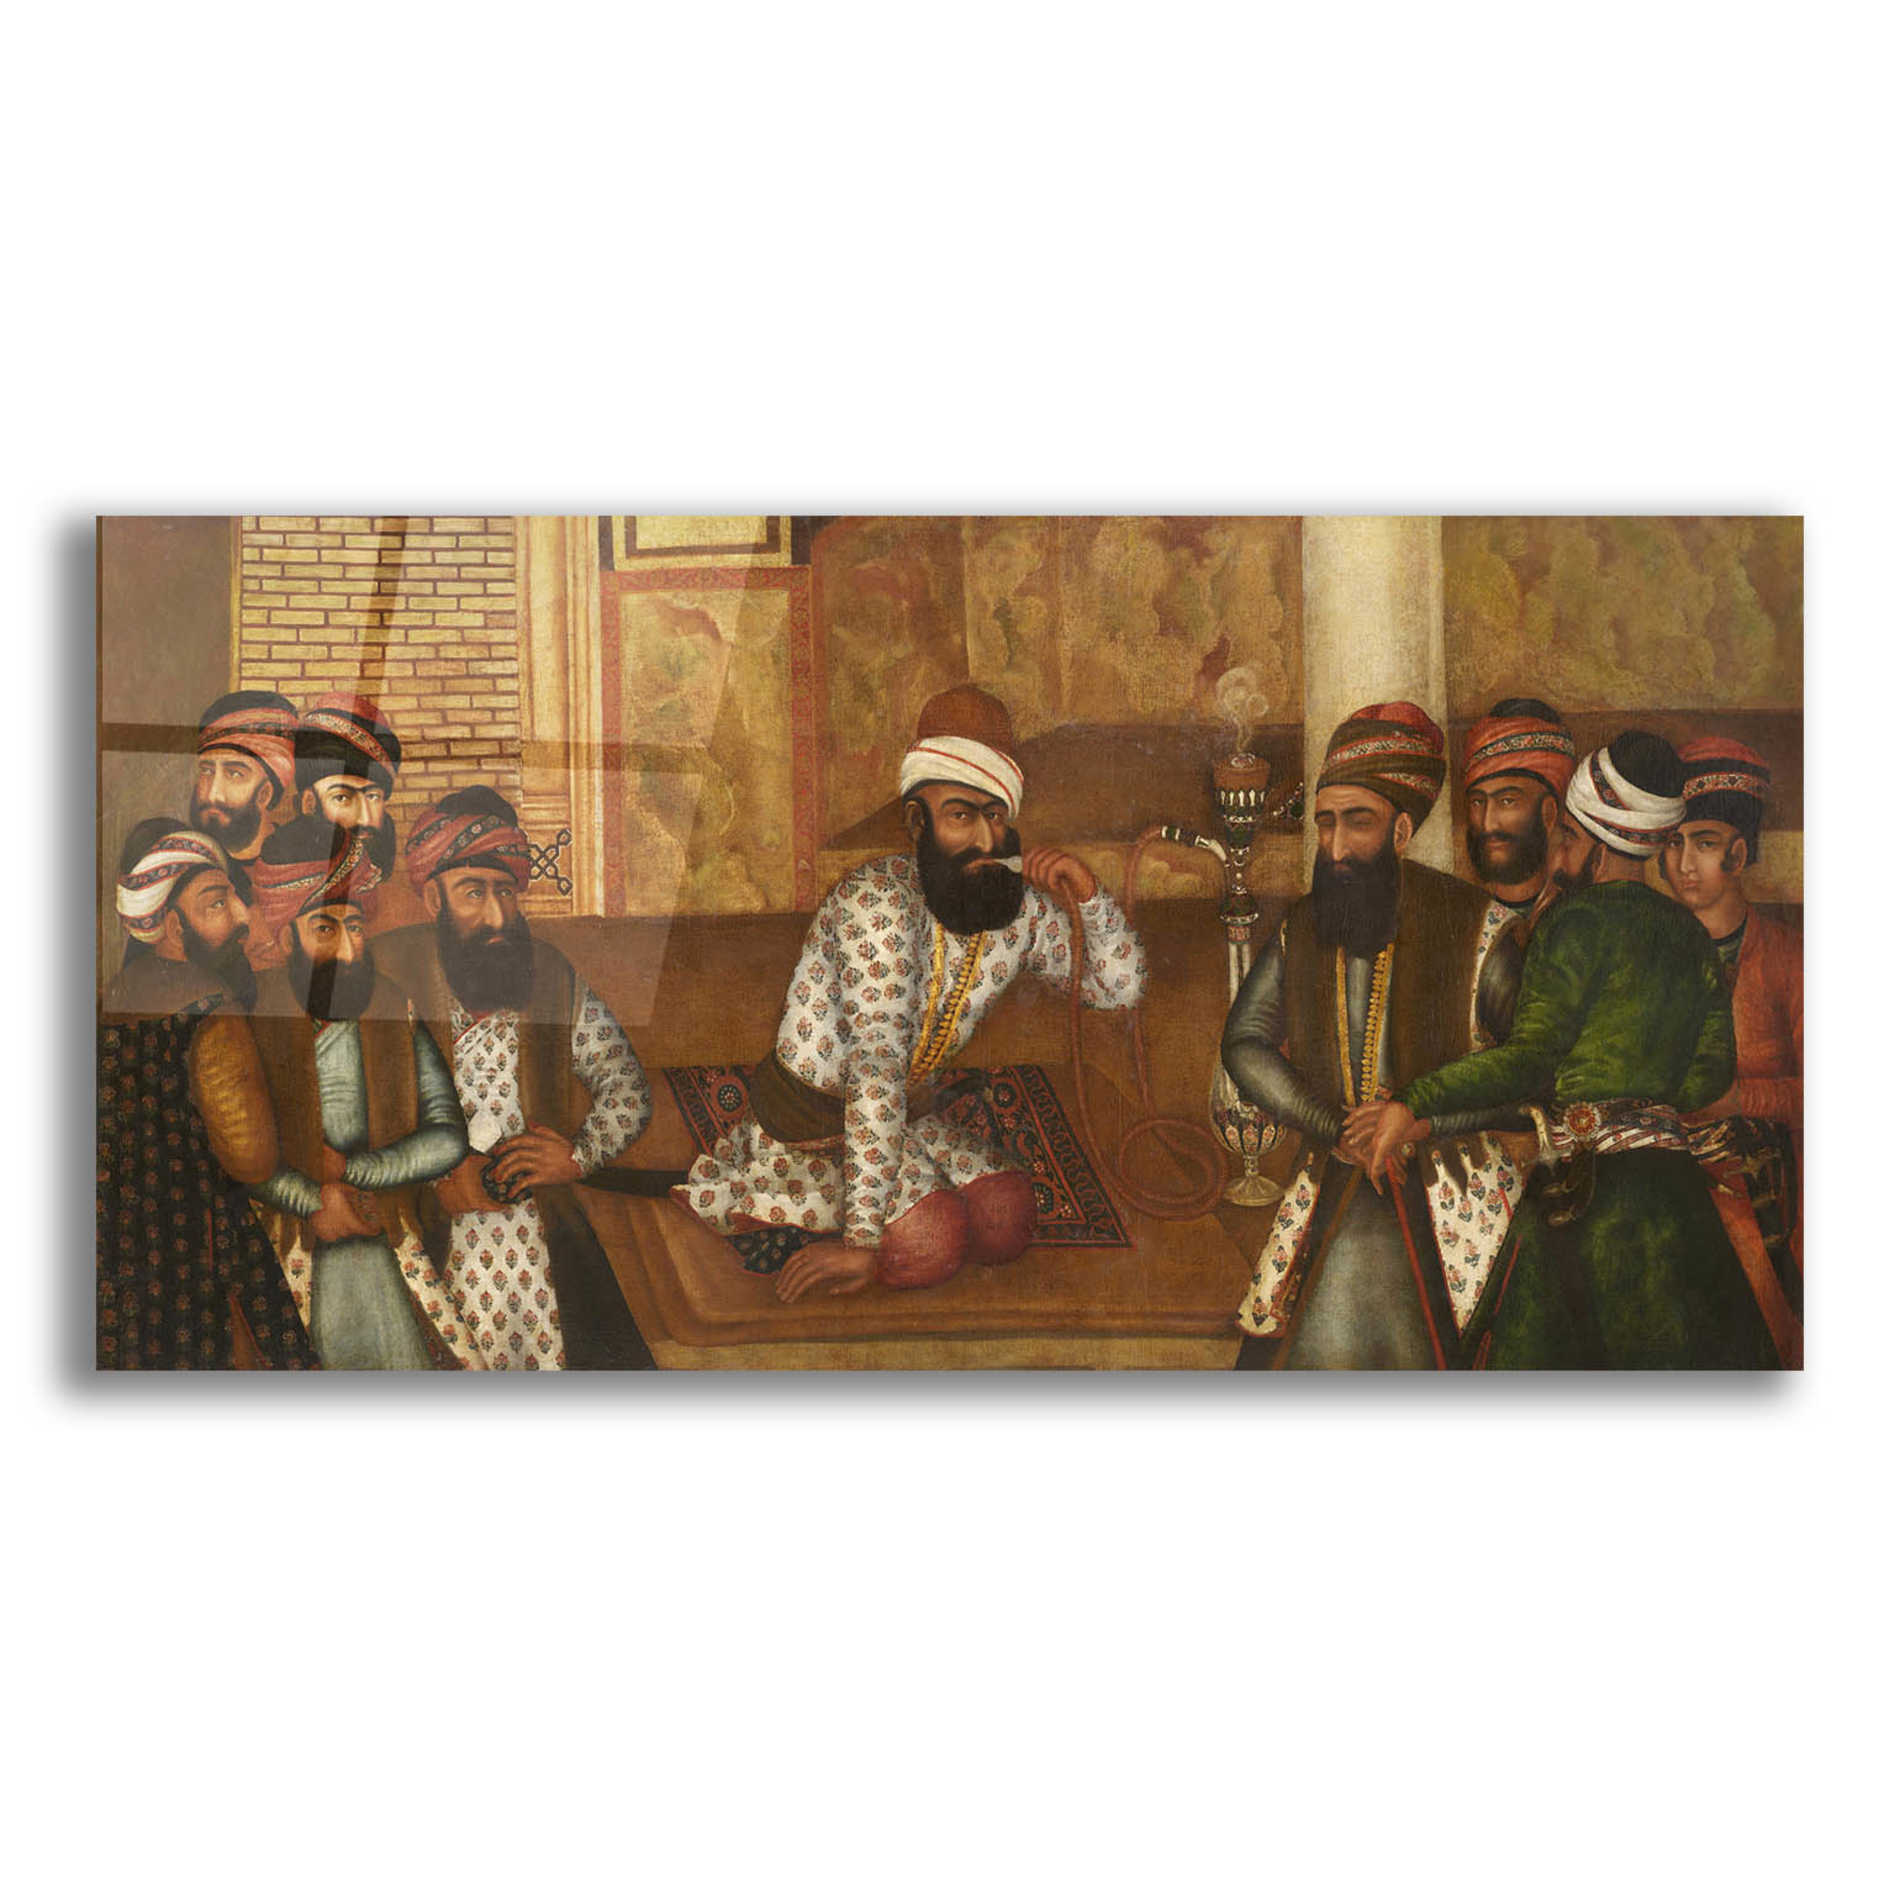 Epic Art 'The Royal Court of Karim Khan' by Mohammad Sadiq, Acrylic Glass Wall Art,24x12x1.1x0,40x20x1.74x0,60x30x1.74x0